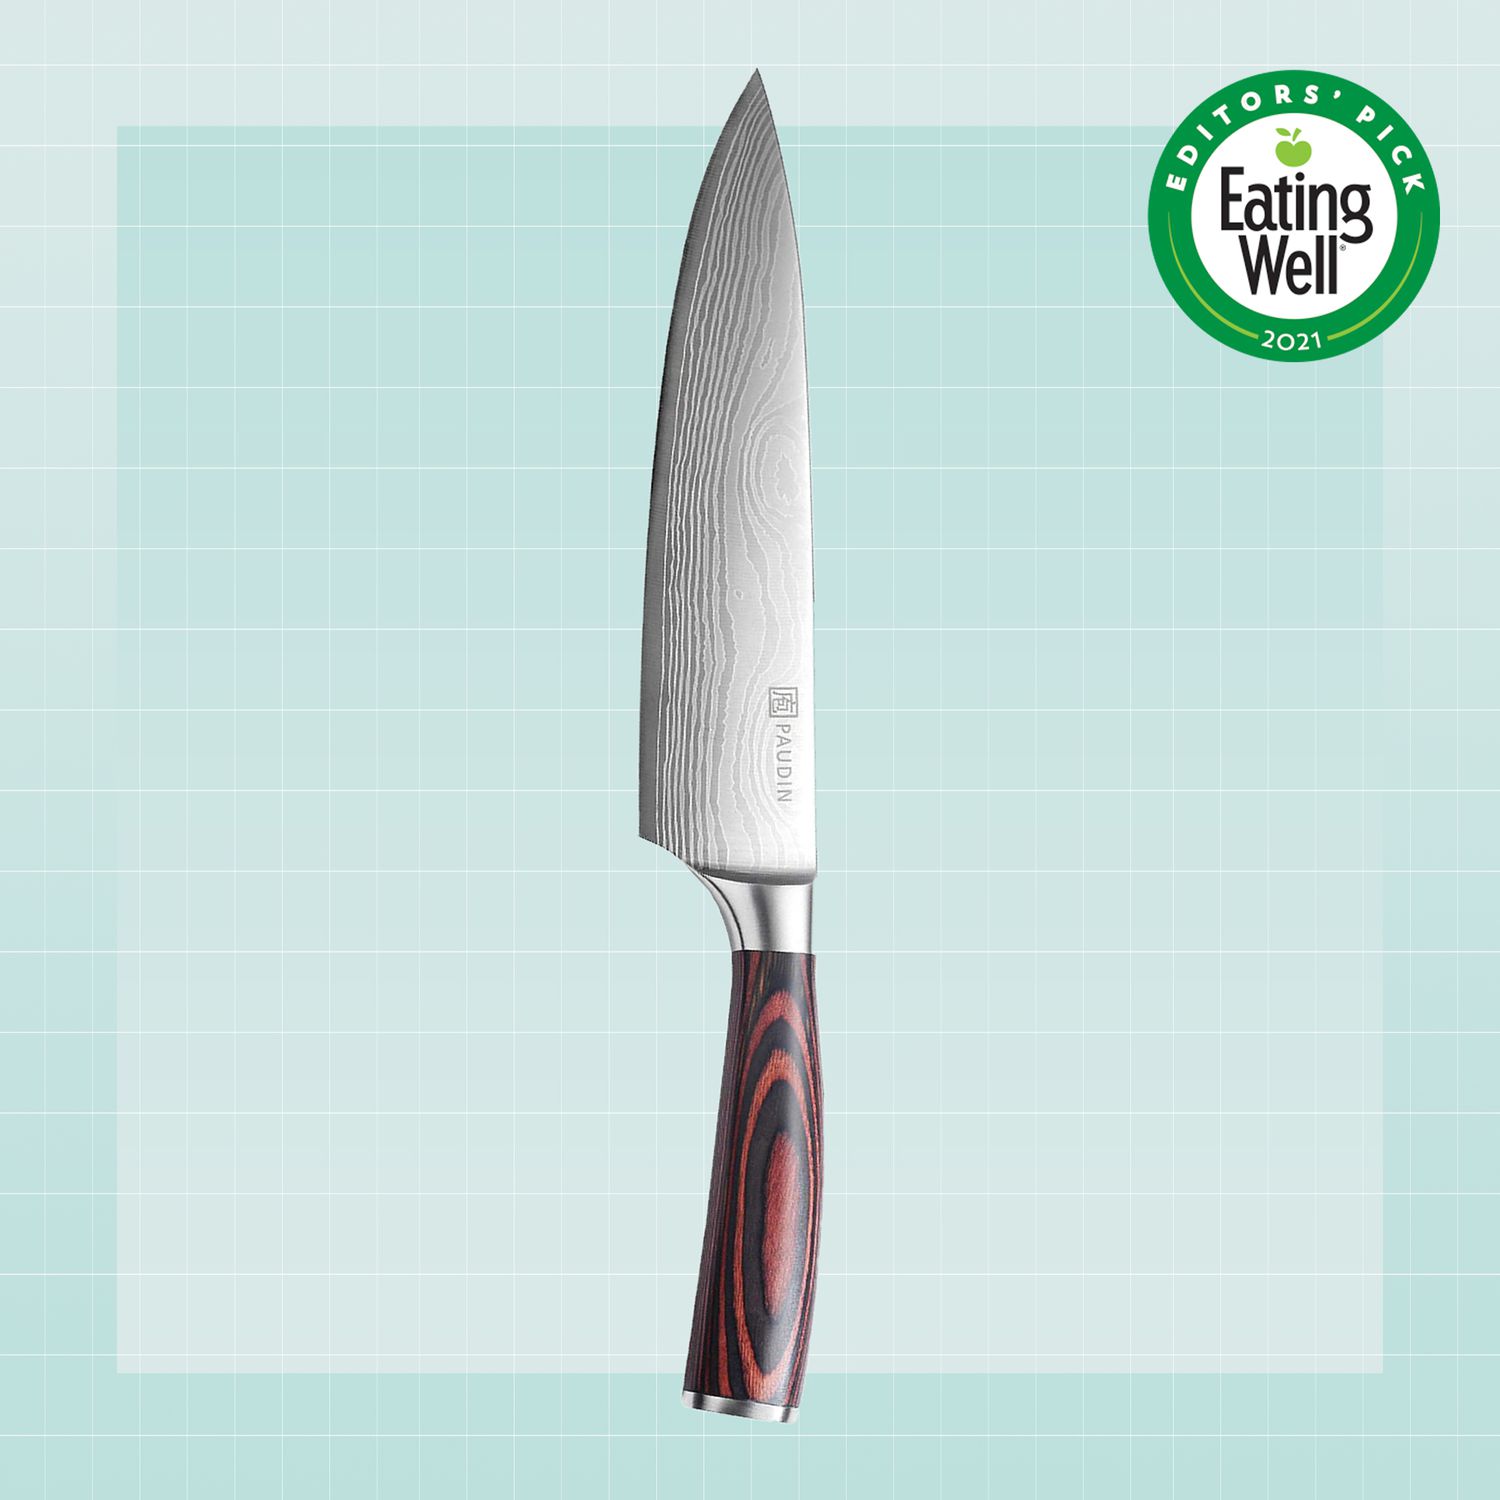 Presentando la mejor lista de cuchillos de chef para facilitar el elegido cuchillo de chefs.